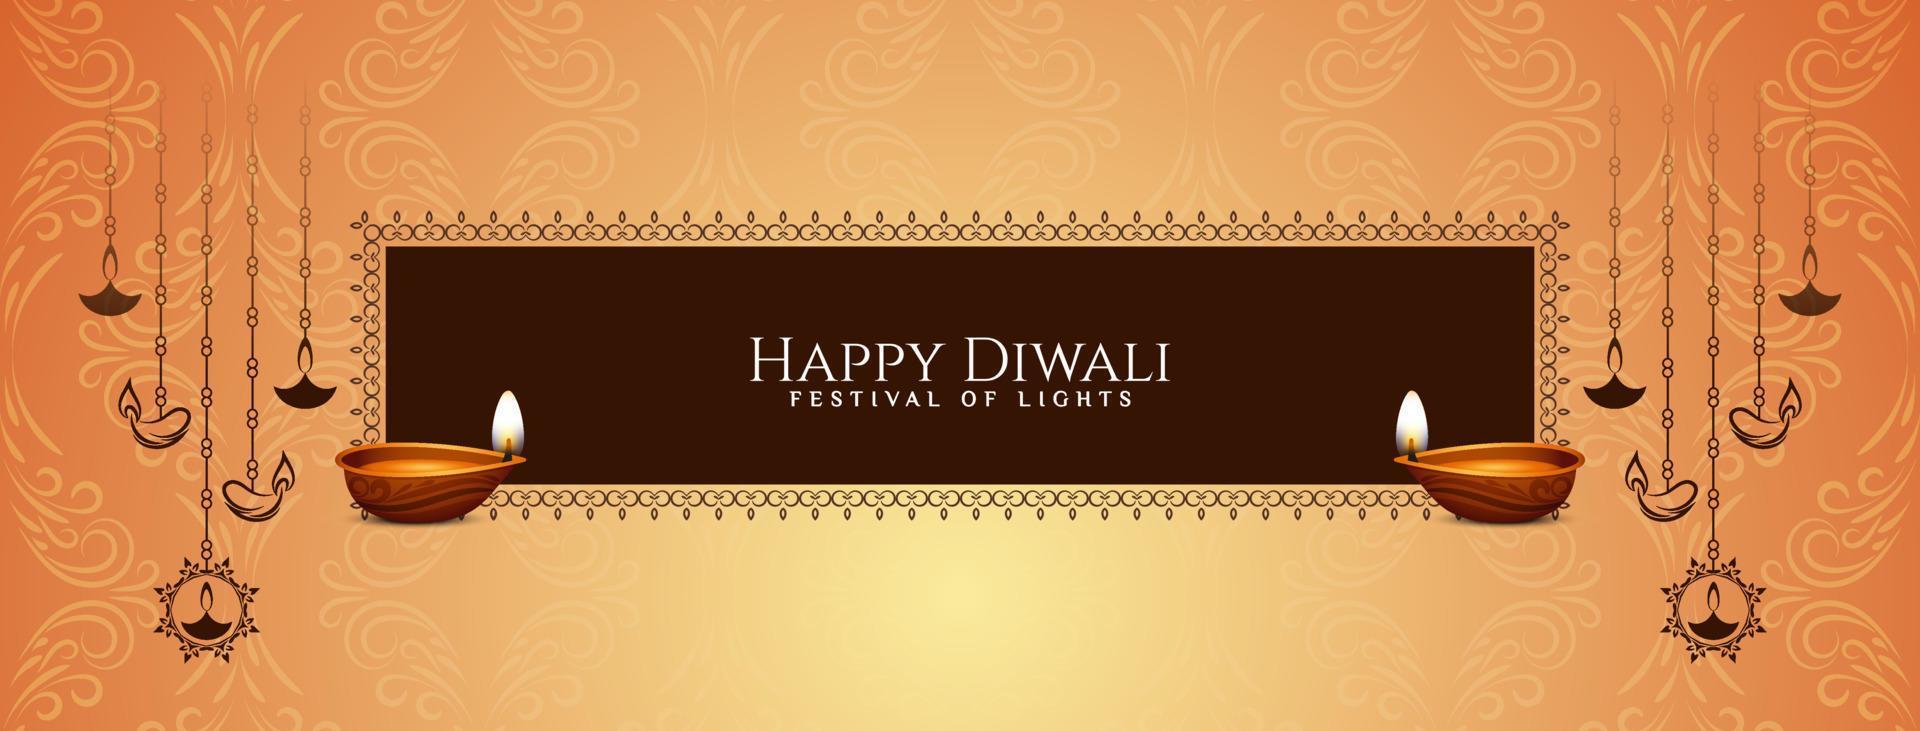 banner decorativo del festival feliz diwali con elegante diseño de lámparas colgantes vector